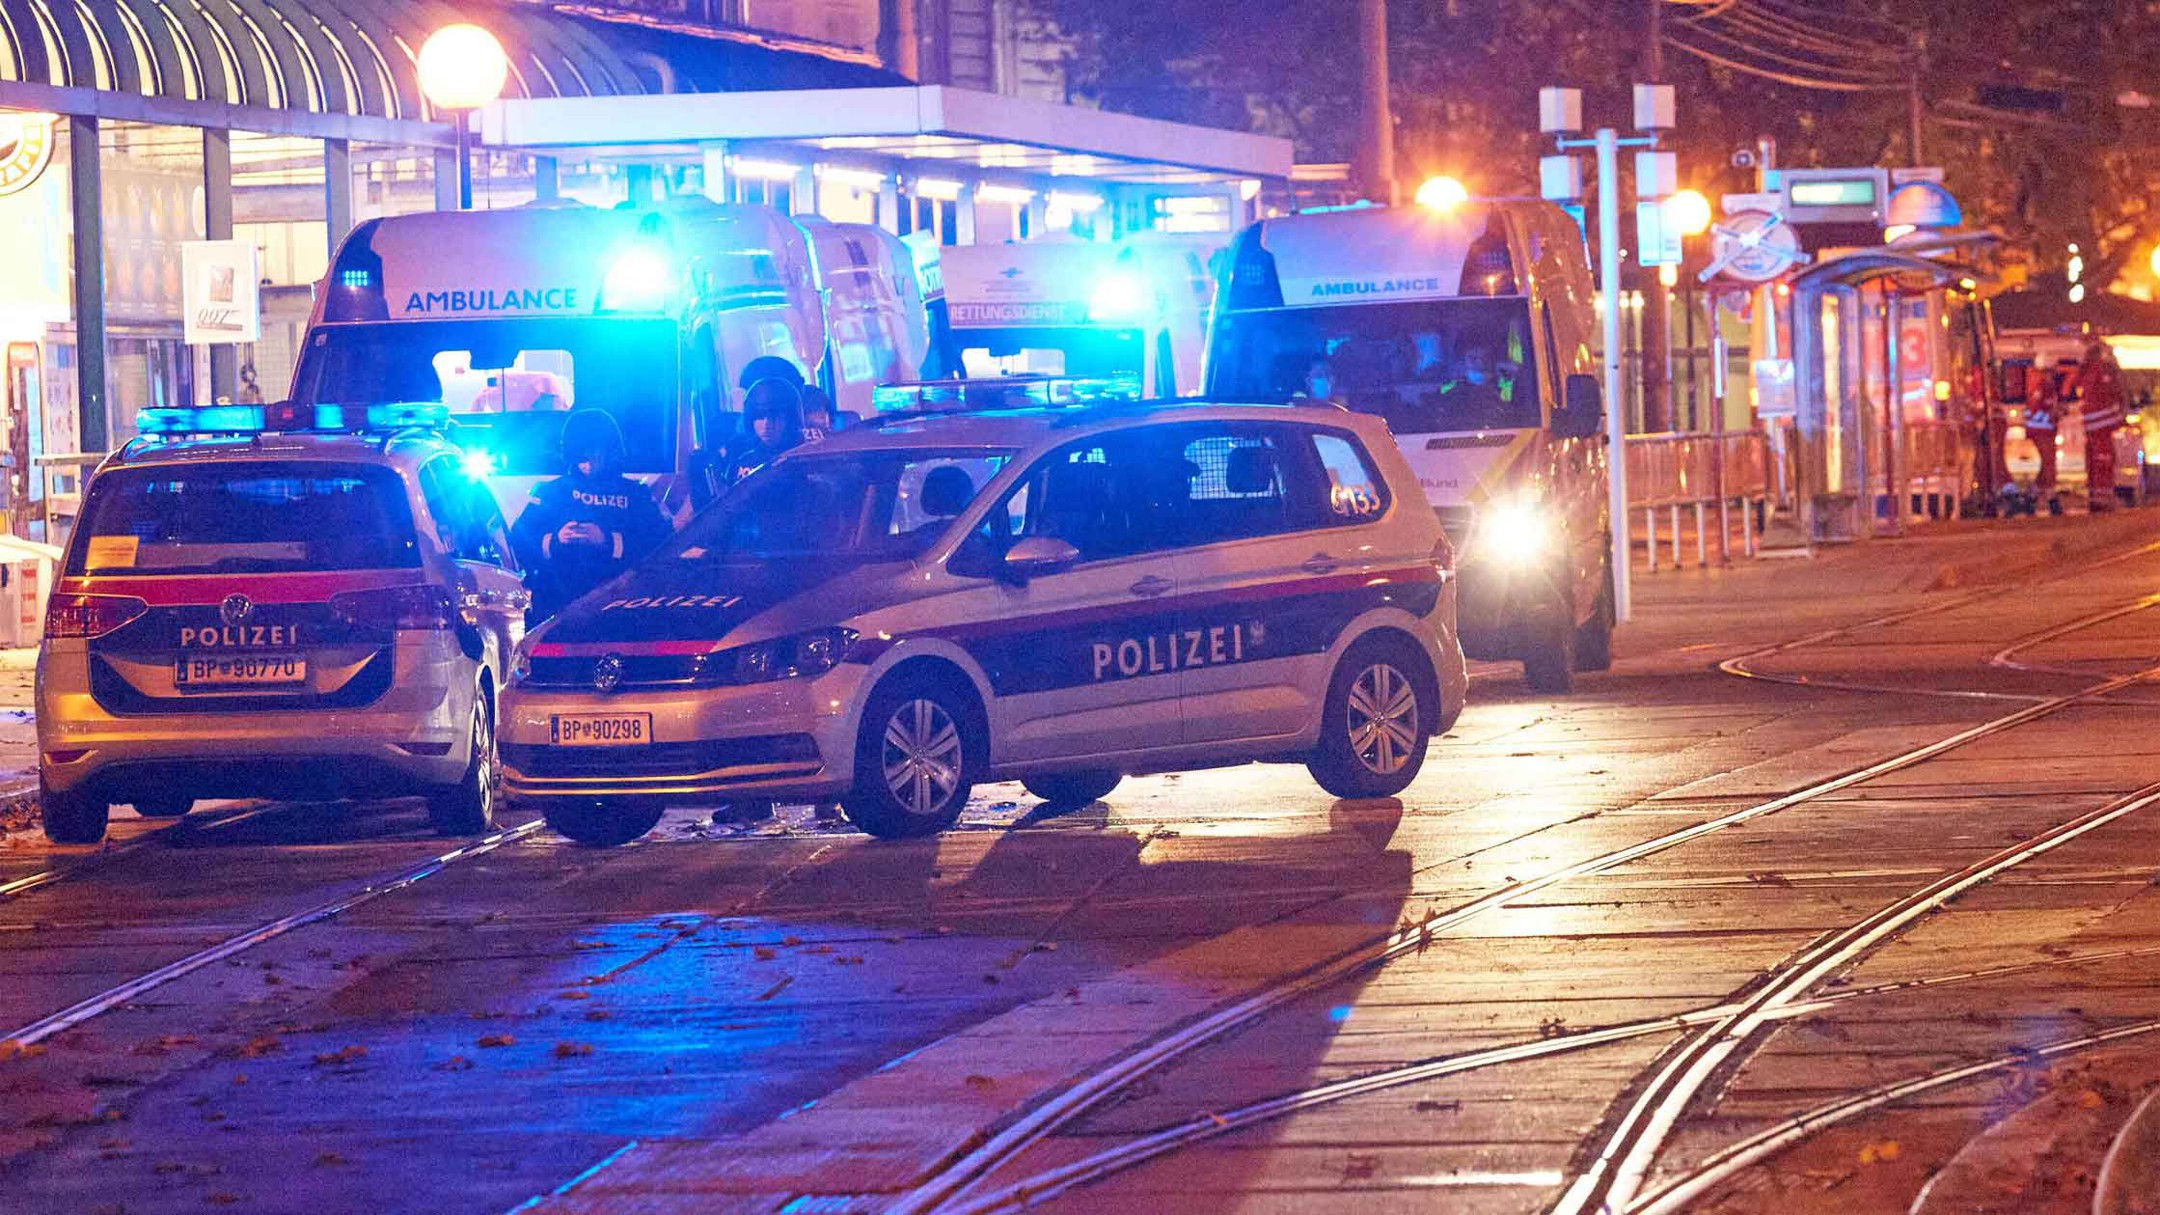 Dailystorm - МВД Австрии нашло связь ИГ с терактом в Вене